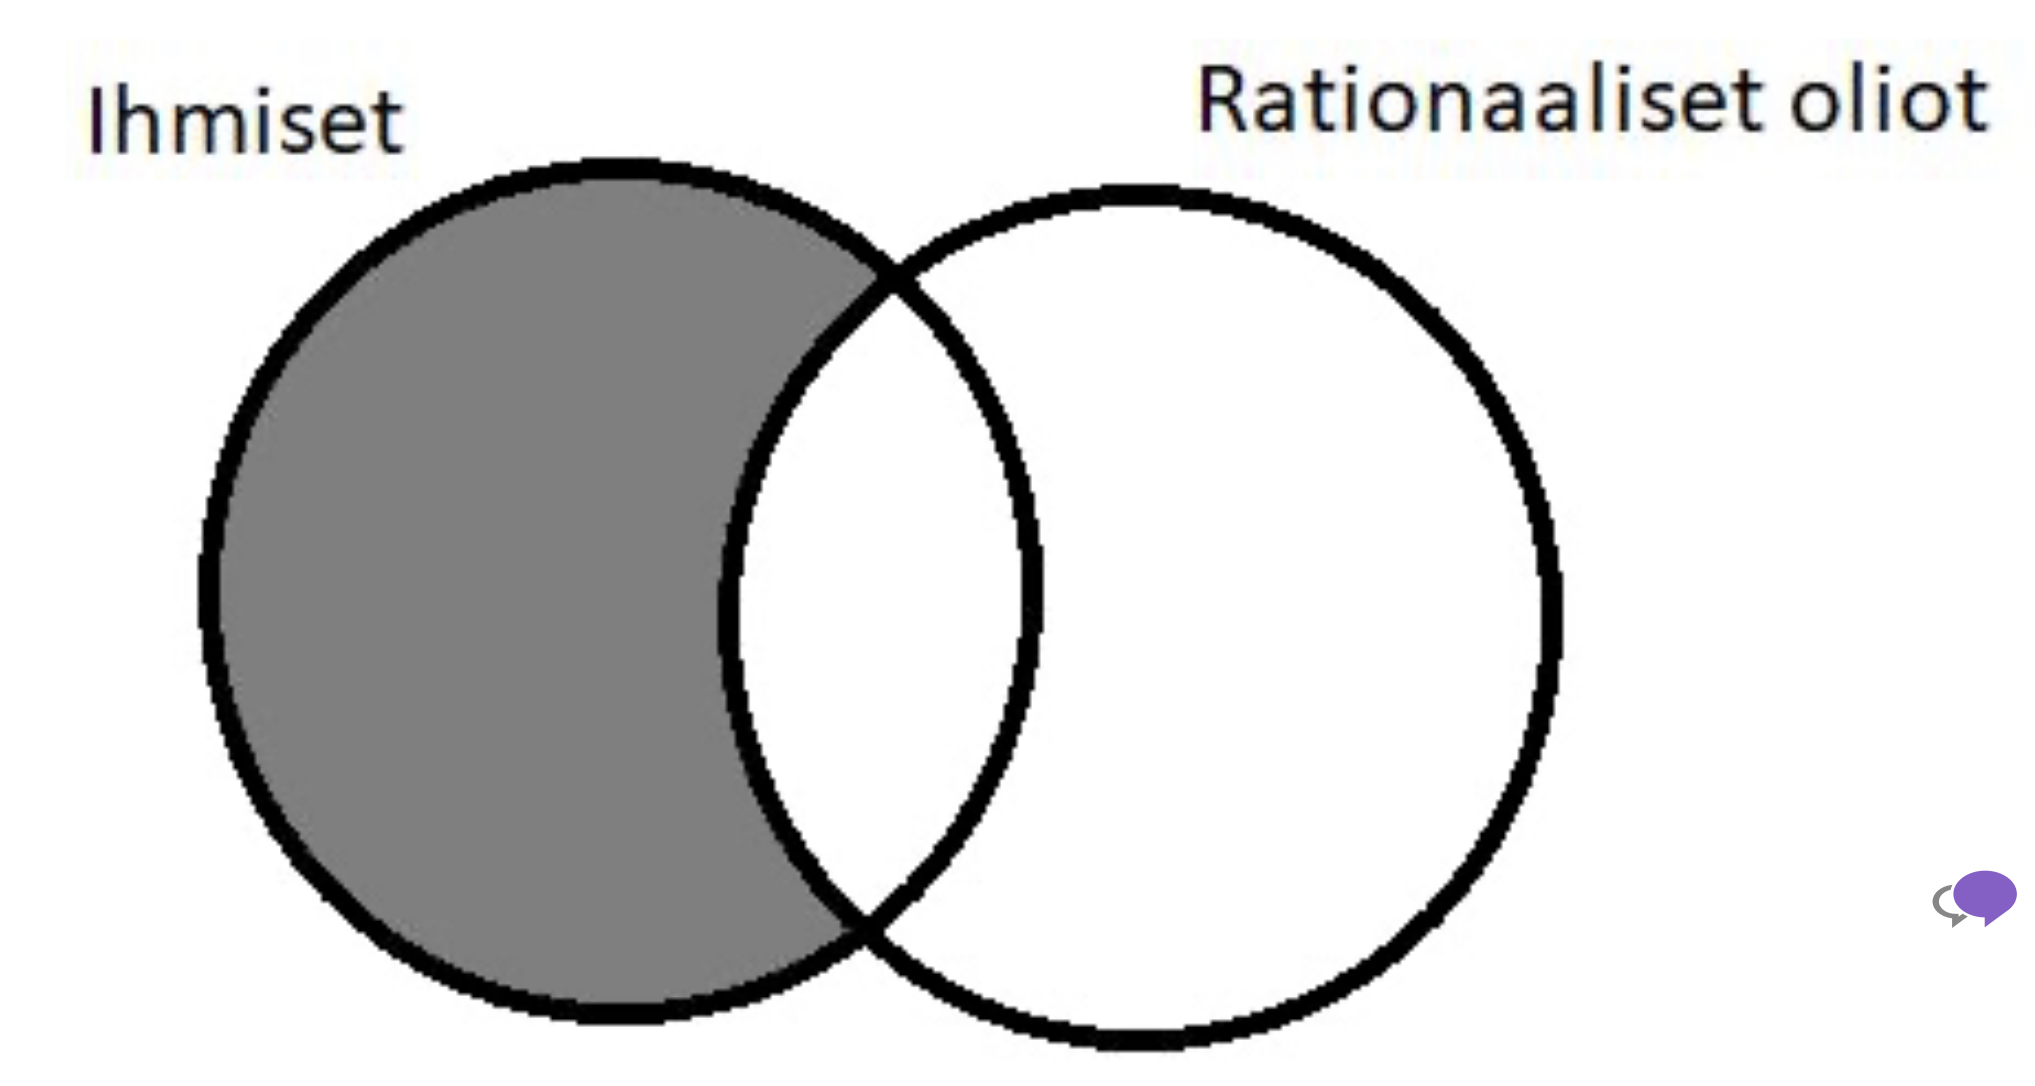 <p>Minkä väitteen totuusehtoja yllä oleva Venn-diagrammi kuvaa?</p><p></p><p>A. Joku ihminen on rationaalinen.</p><p>B. Joku ihminen ei ole rationaalinen.</p><p>C. Jokainen ihminen on rationaalinen.</p><p>D. Yksikään ihminen ei ole rationaalinen.</p>